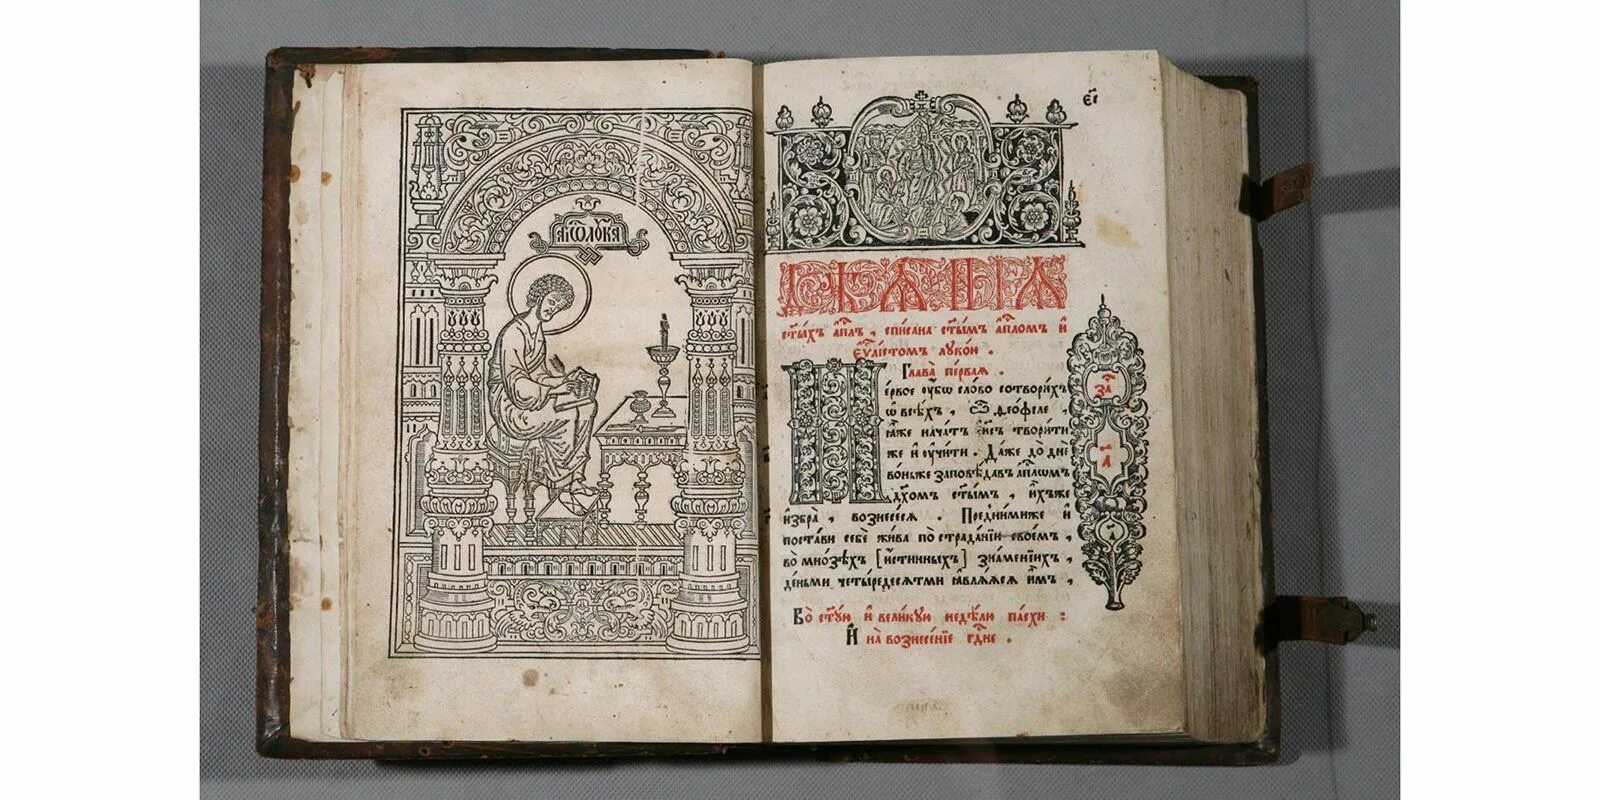 Апостол Ивана фёдорова. Апостол 1564. Издание первой датированной книги